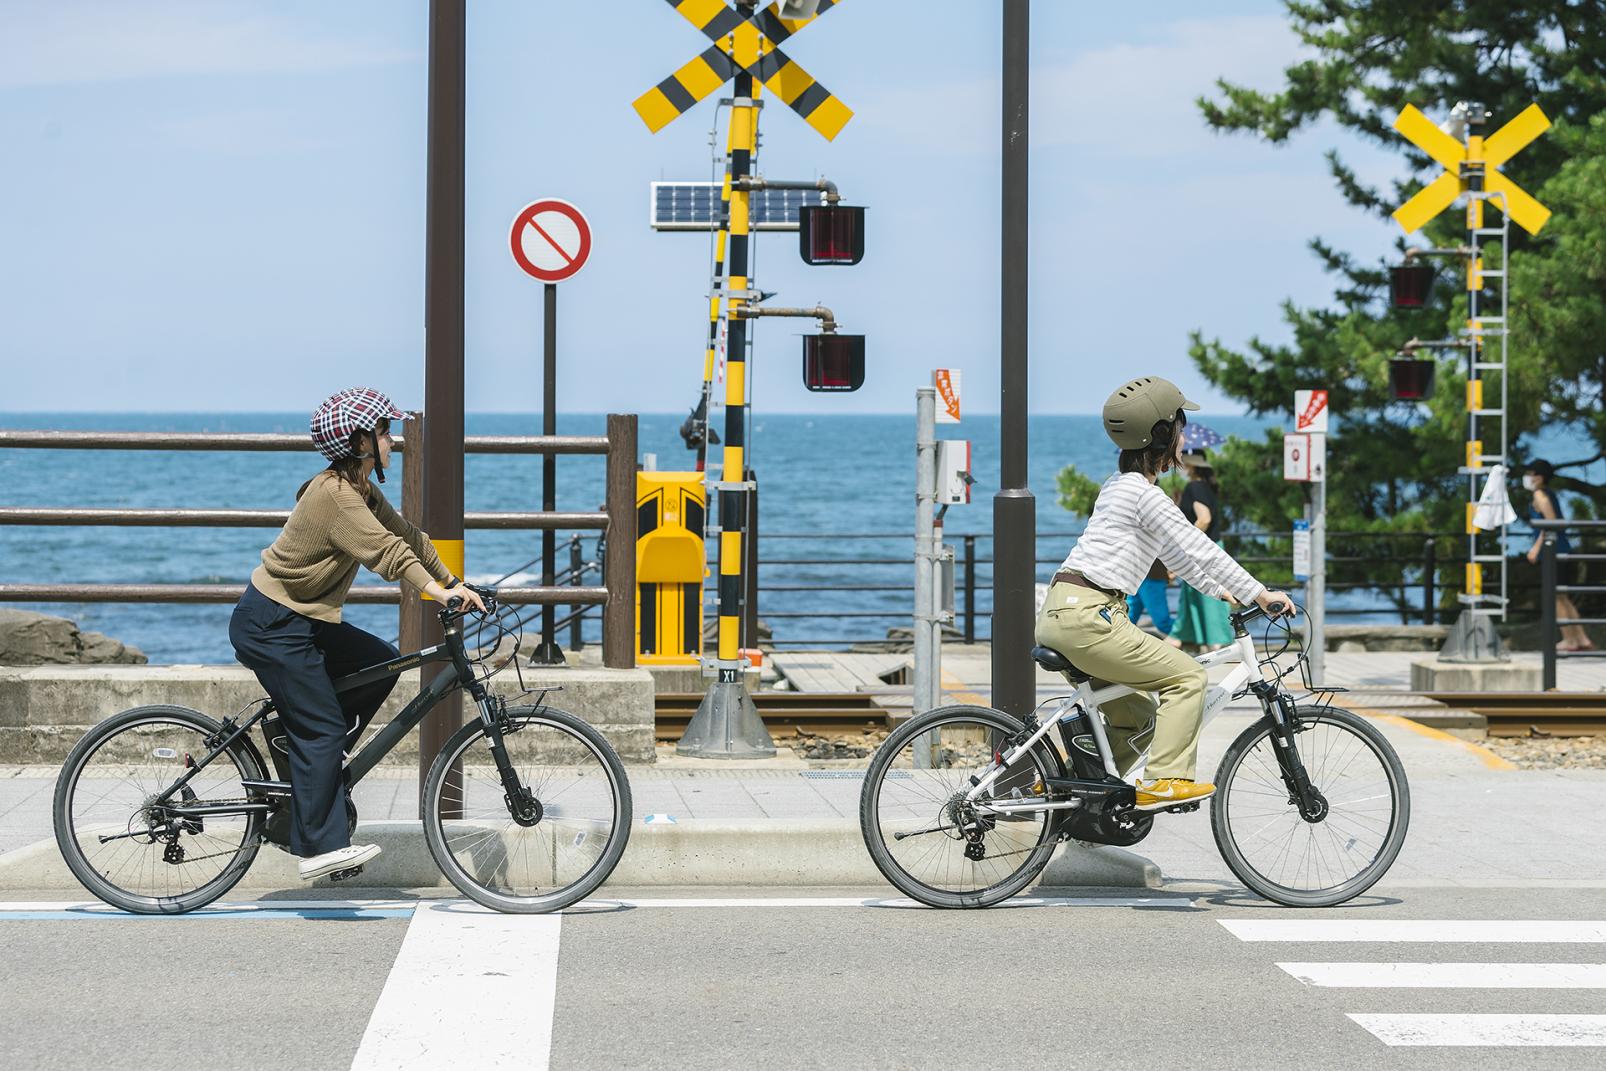 レンタサイクルで景色のいい海沿いを走る富山湾岸へサイクリングに出かけよう(富山県氷見市〜高岡市)